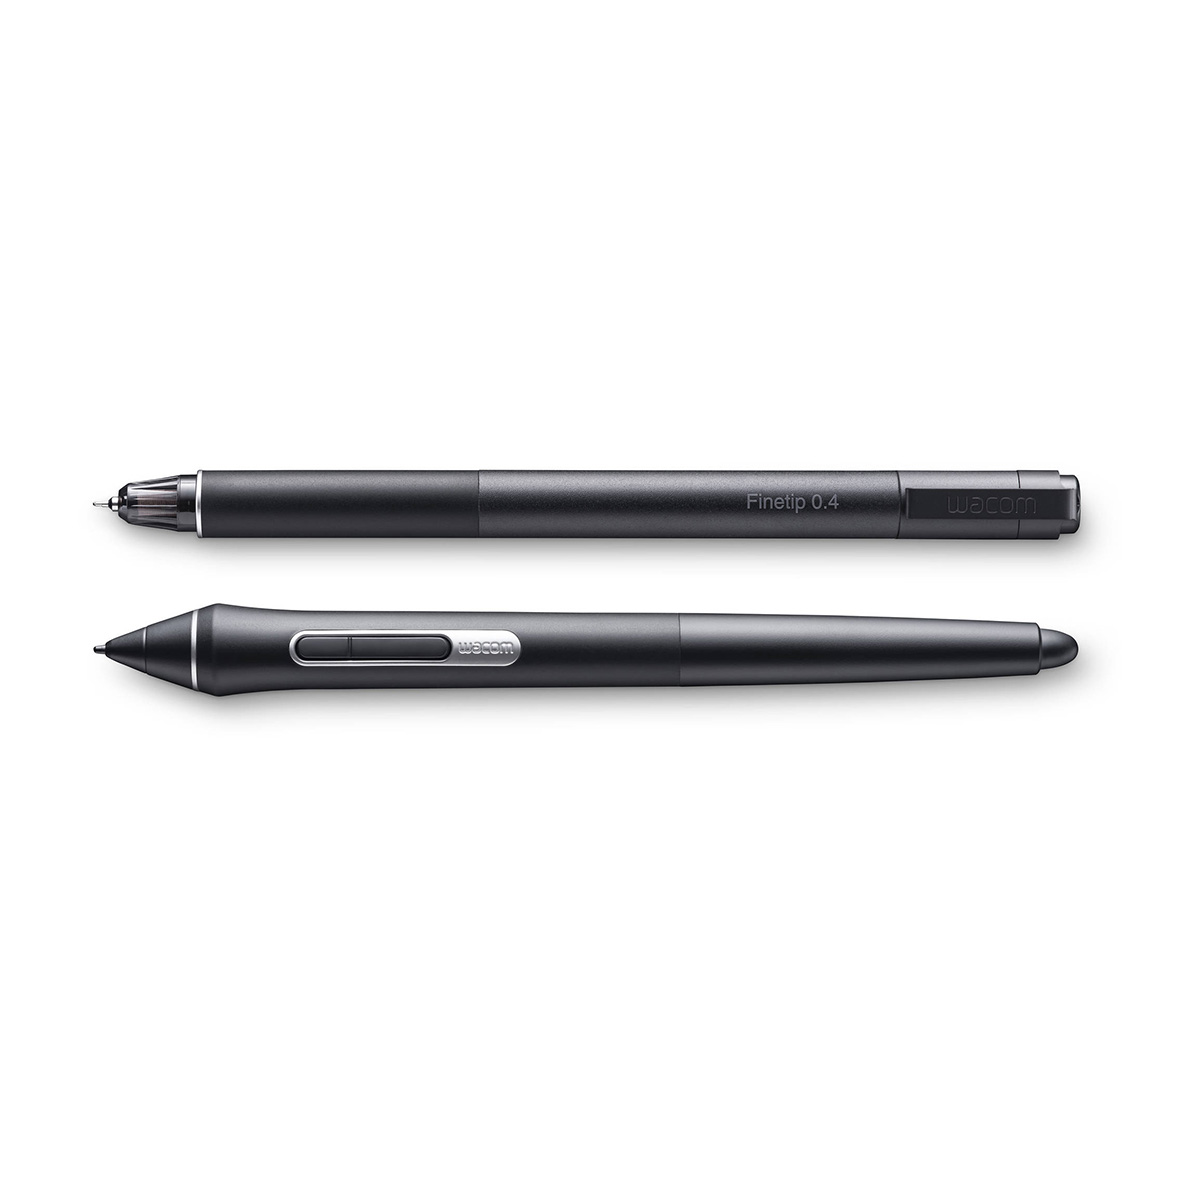 Wacom Intuos Pro Paper Edition M w/Wacom Pro Pen 2 (PTH-660/K1-CX)